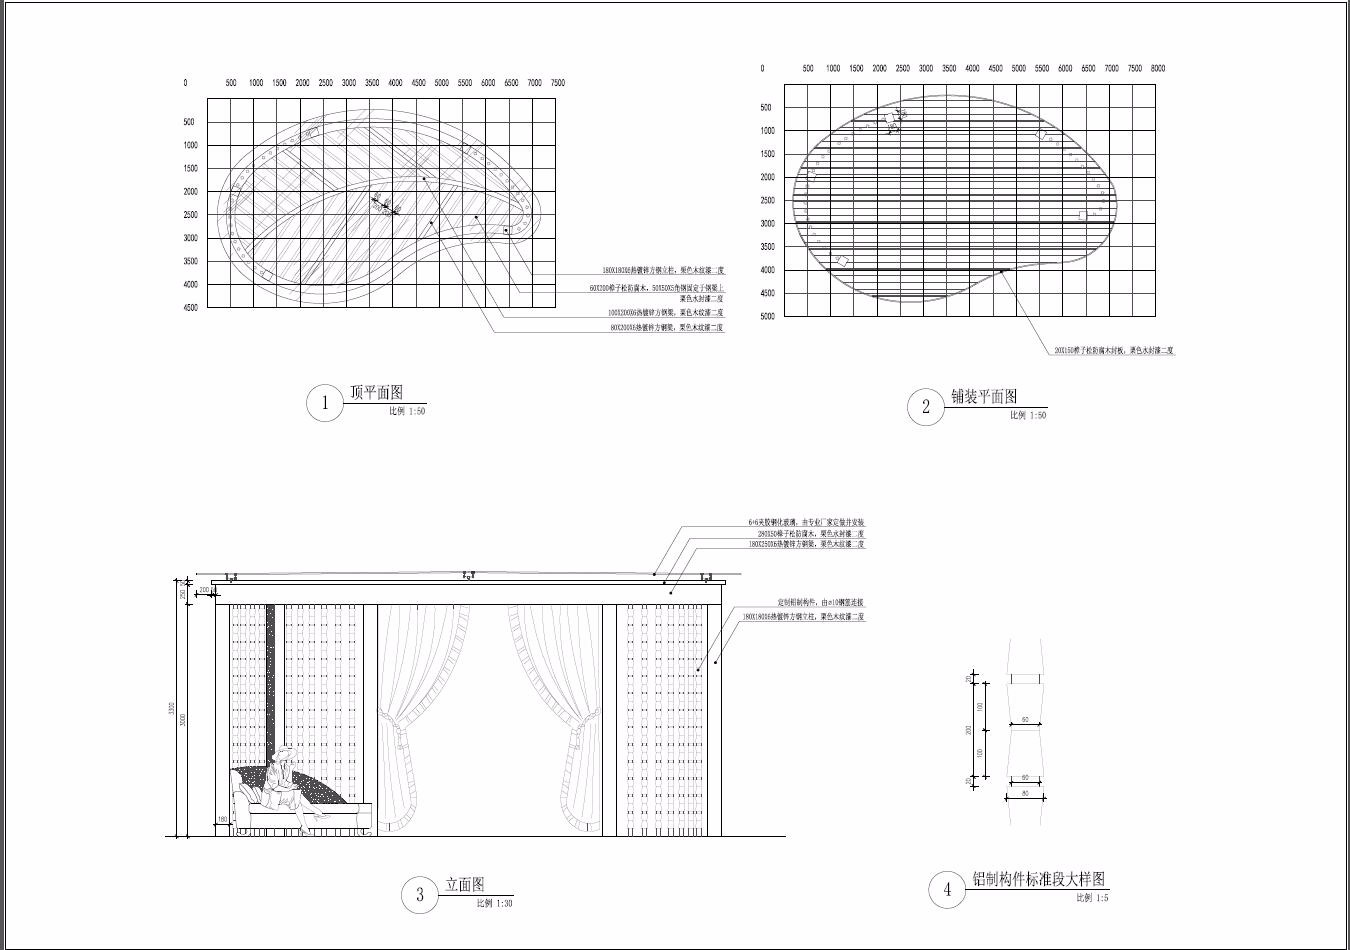 钢结构艺术异型叶片景观亭子廊架施工图详图  